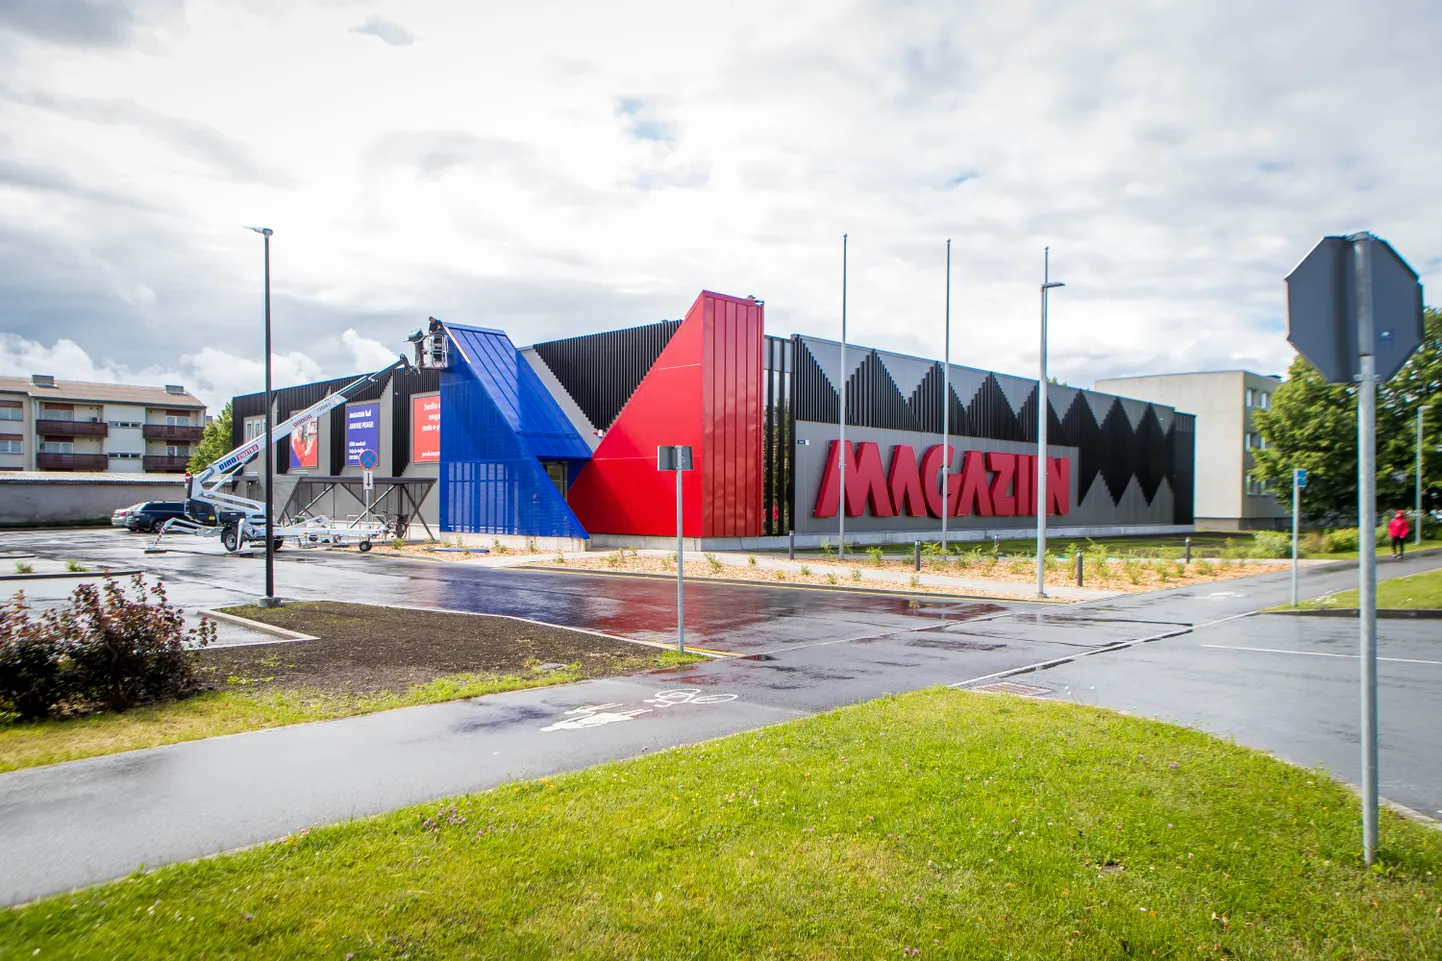 Pildil on Magaziini Saaremaa kauplus. KPG Kaubanduse OÜ tahab kaupluse rajada ka Paidesse.